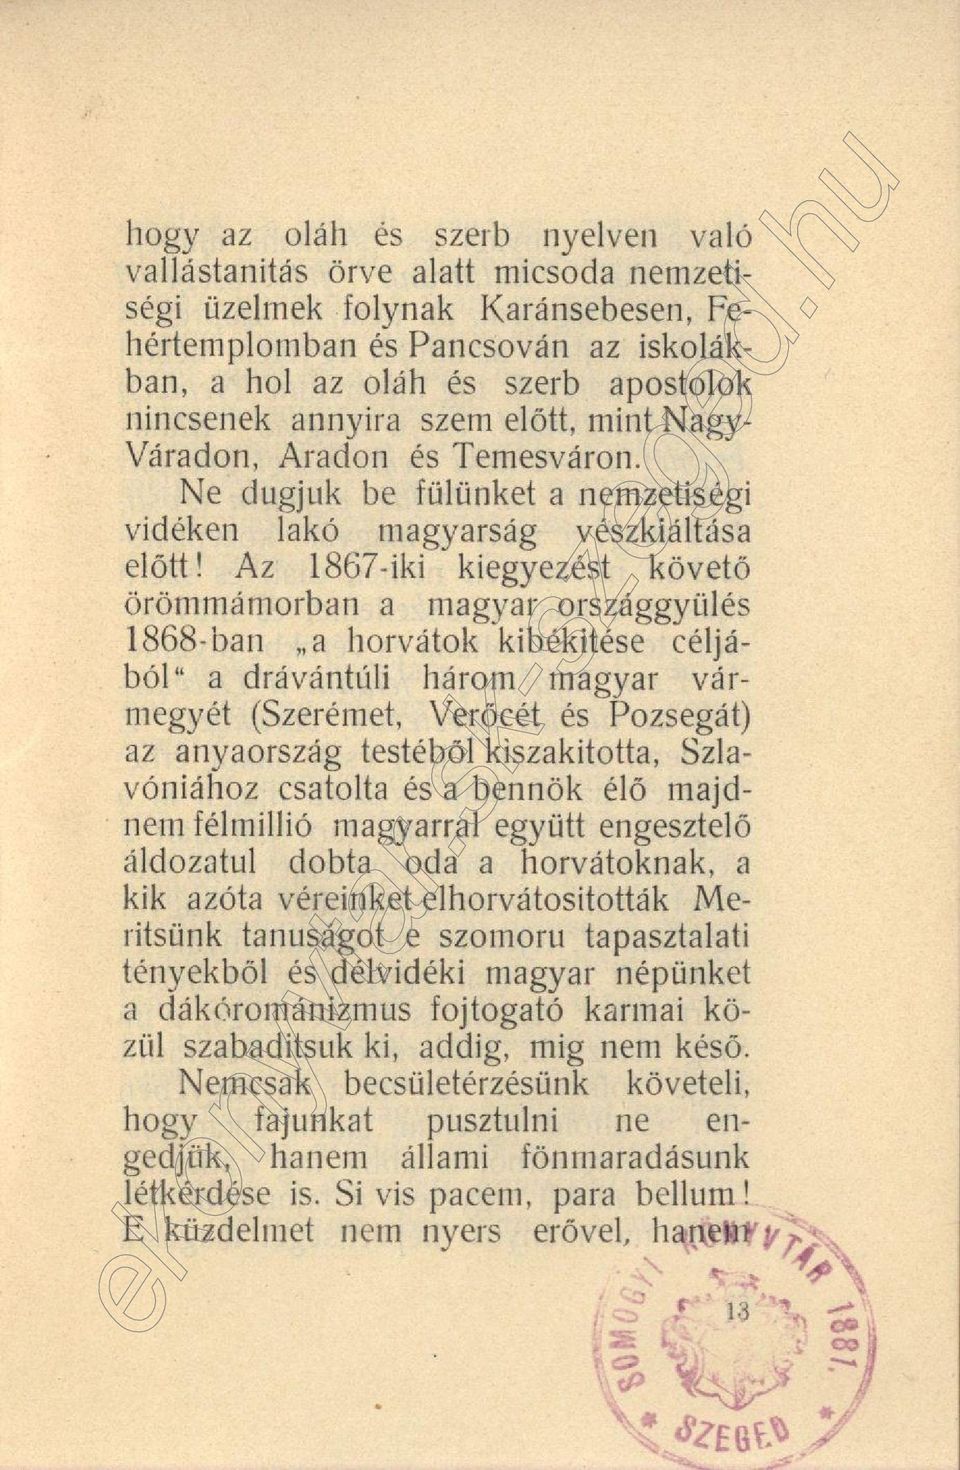 Az 1867-iki kiegyezést követő örömmámorban a magyar országgyülés 1868-ban a horvátok kibékitése céljából a drávántúli három magyar vármegyét (Szerémet, Verőcét és Pozsegát) az anyaország testéből